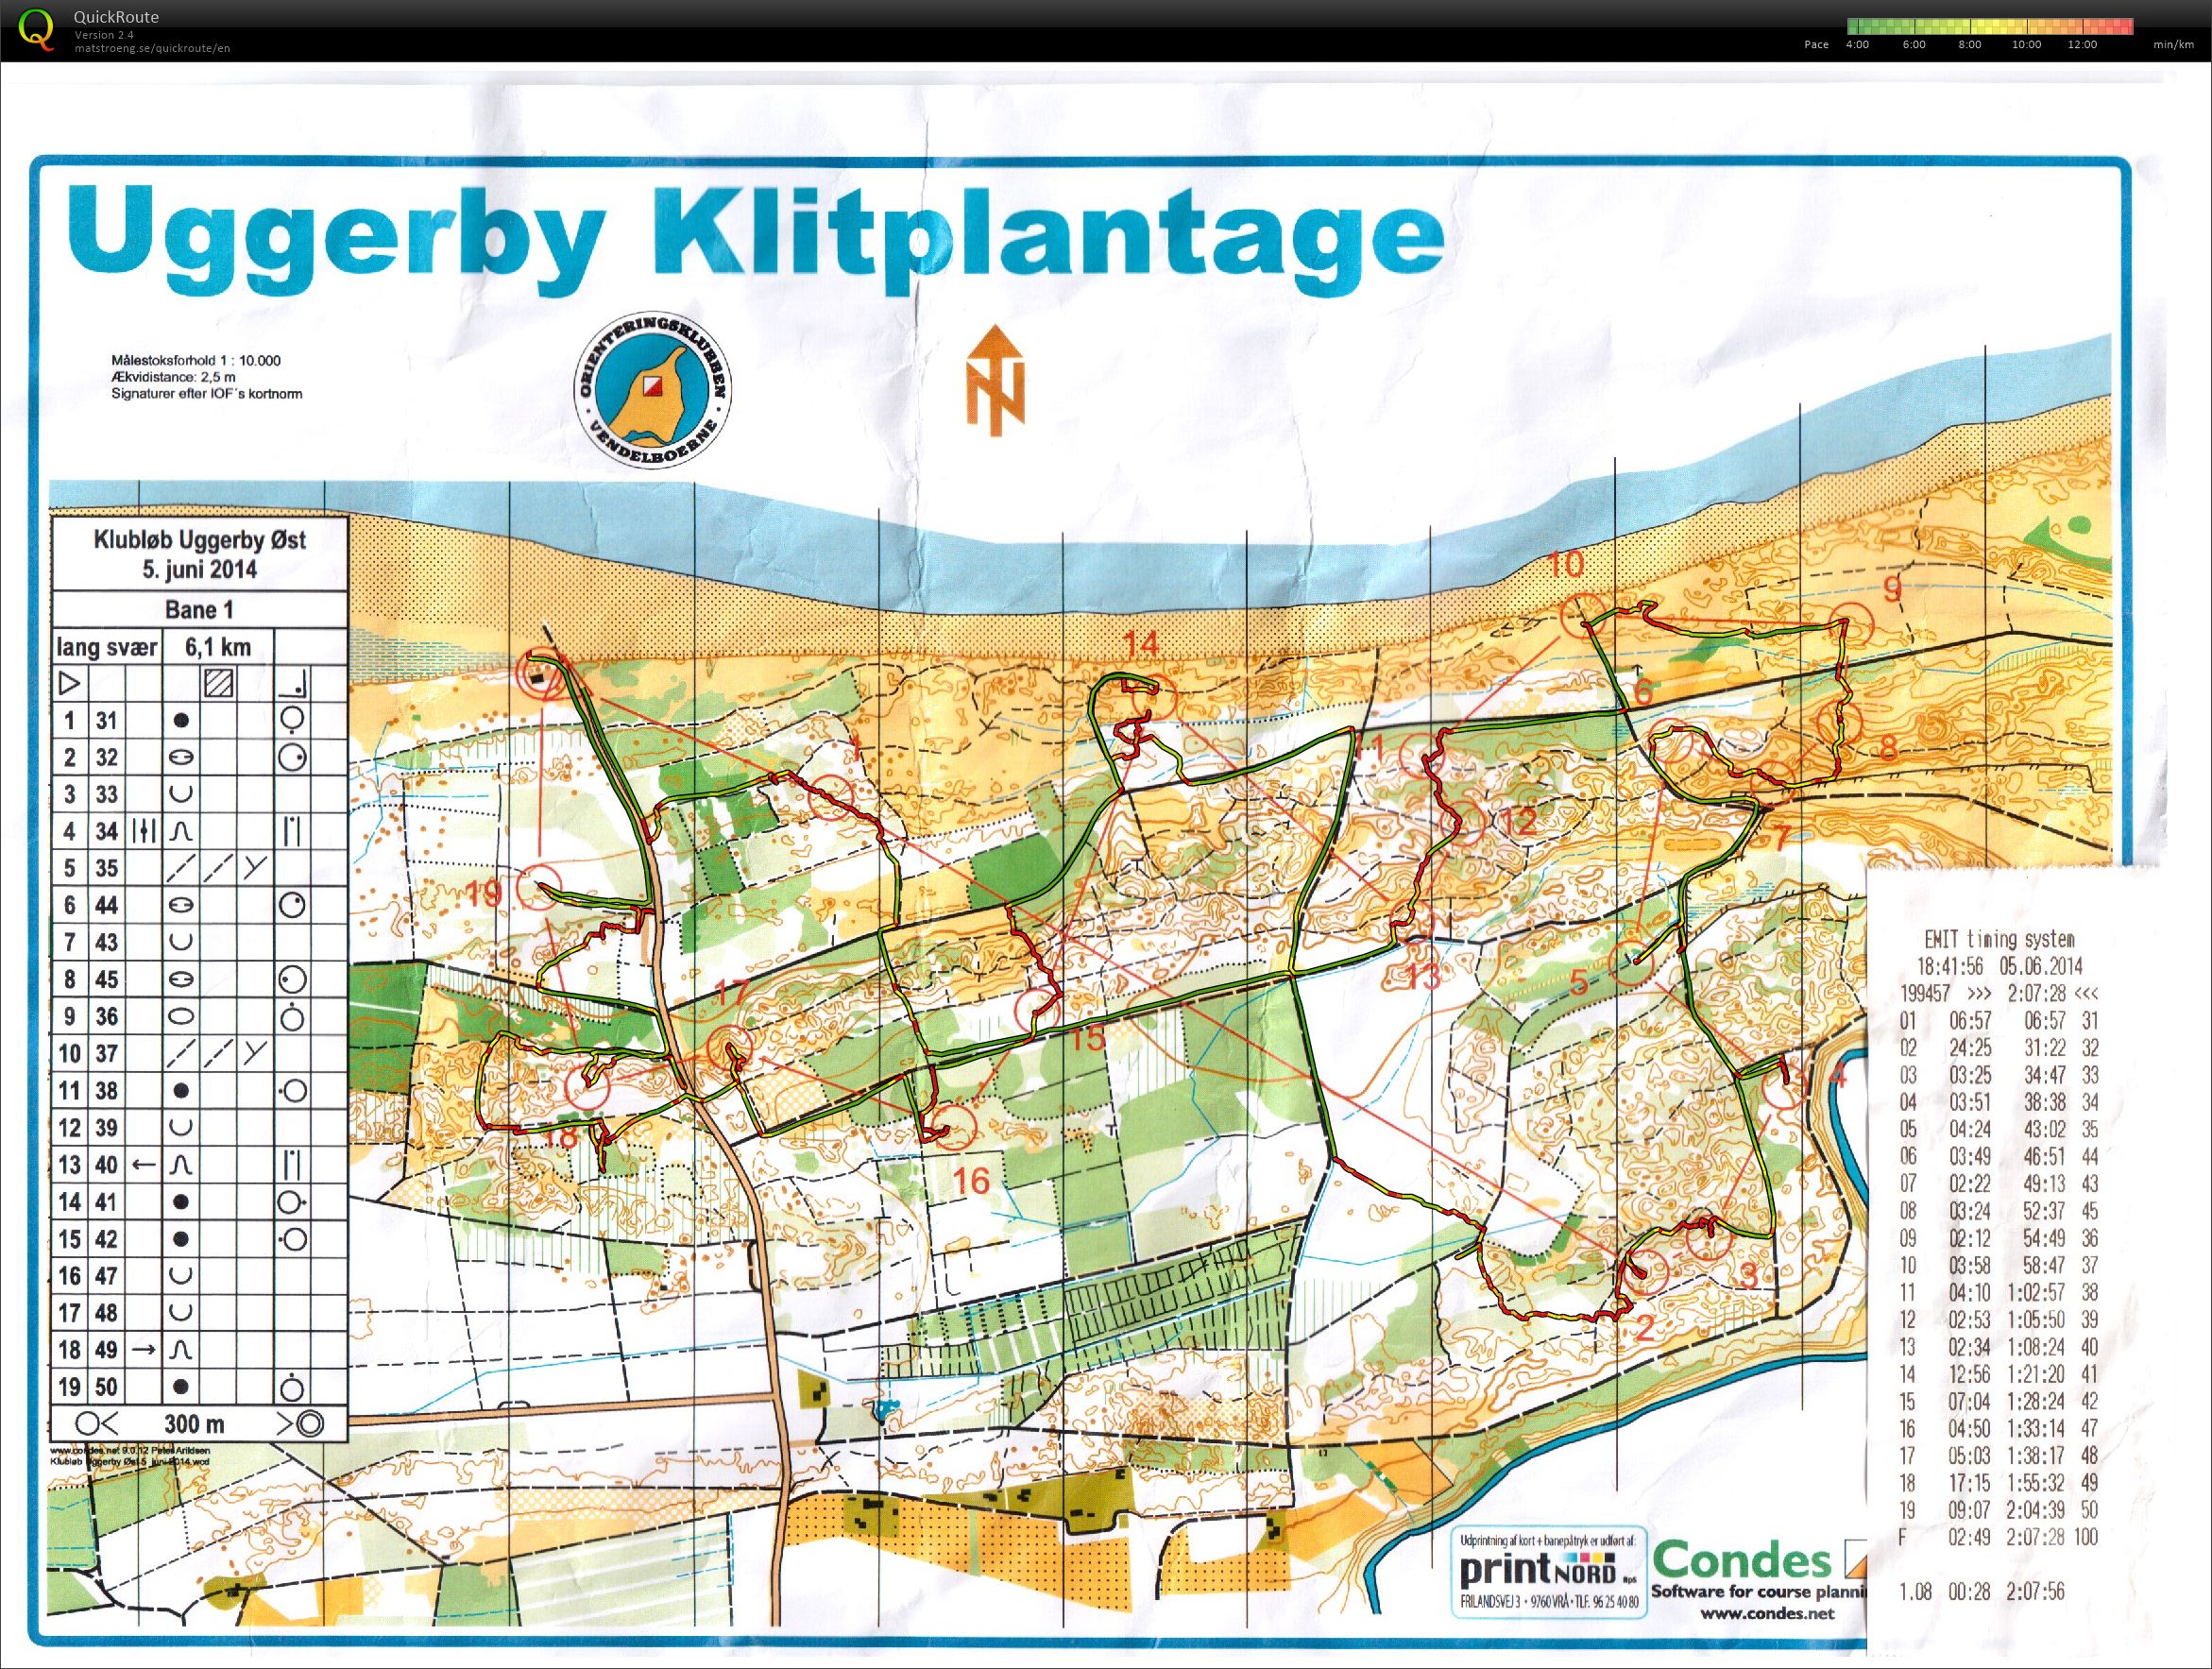 Uggerby Klitplantage, 05-06-2014 (05/06/2014)